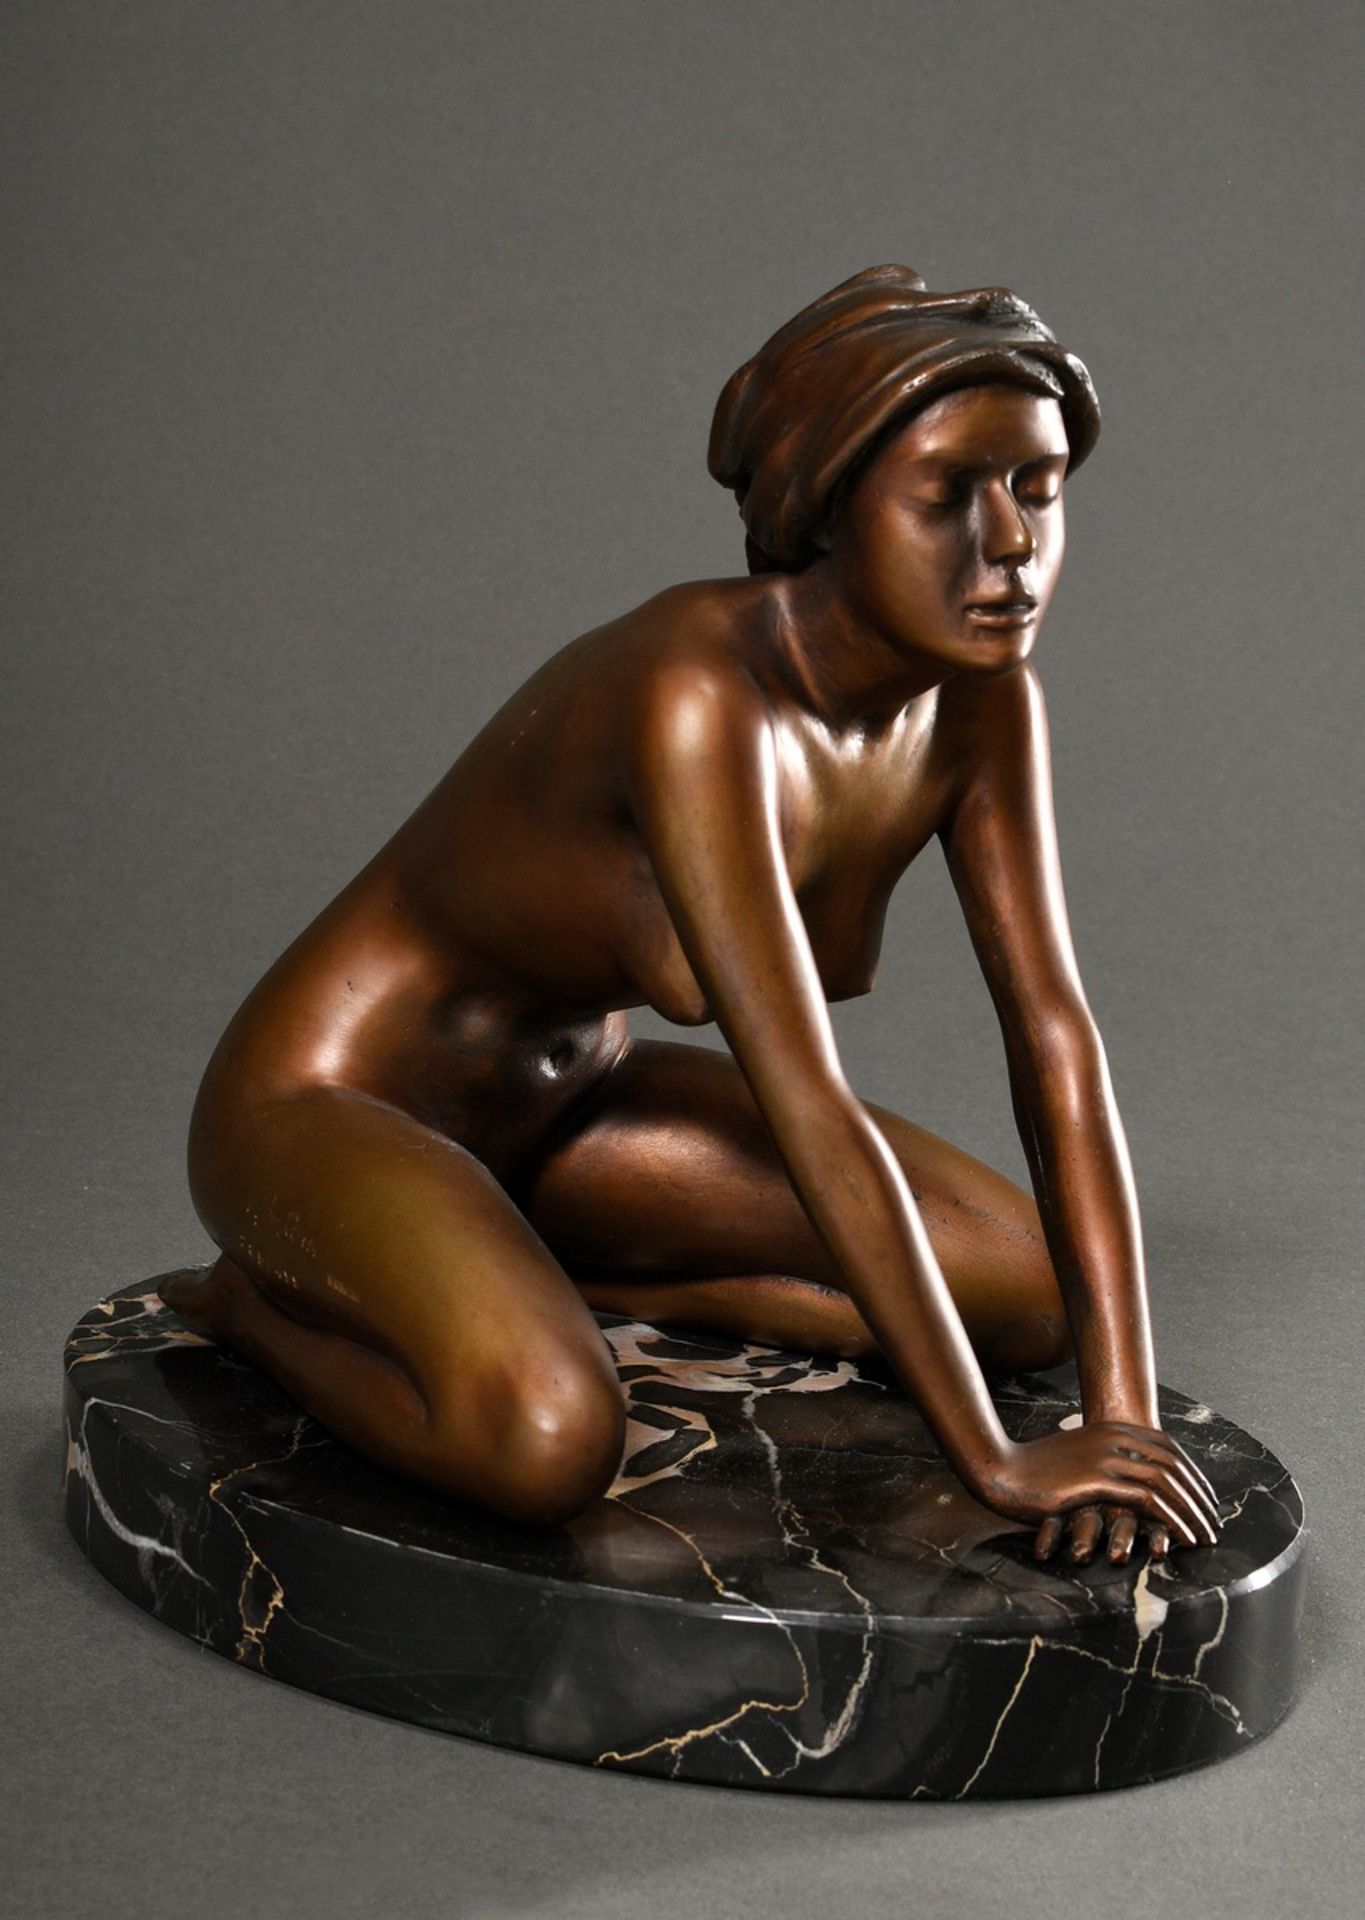 Breker, Arno (1900-1991) "Kneeling Girl", 285/499, signed/numbered, brown patinated bronze, cast "V